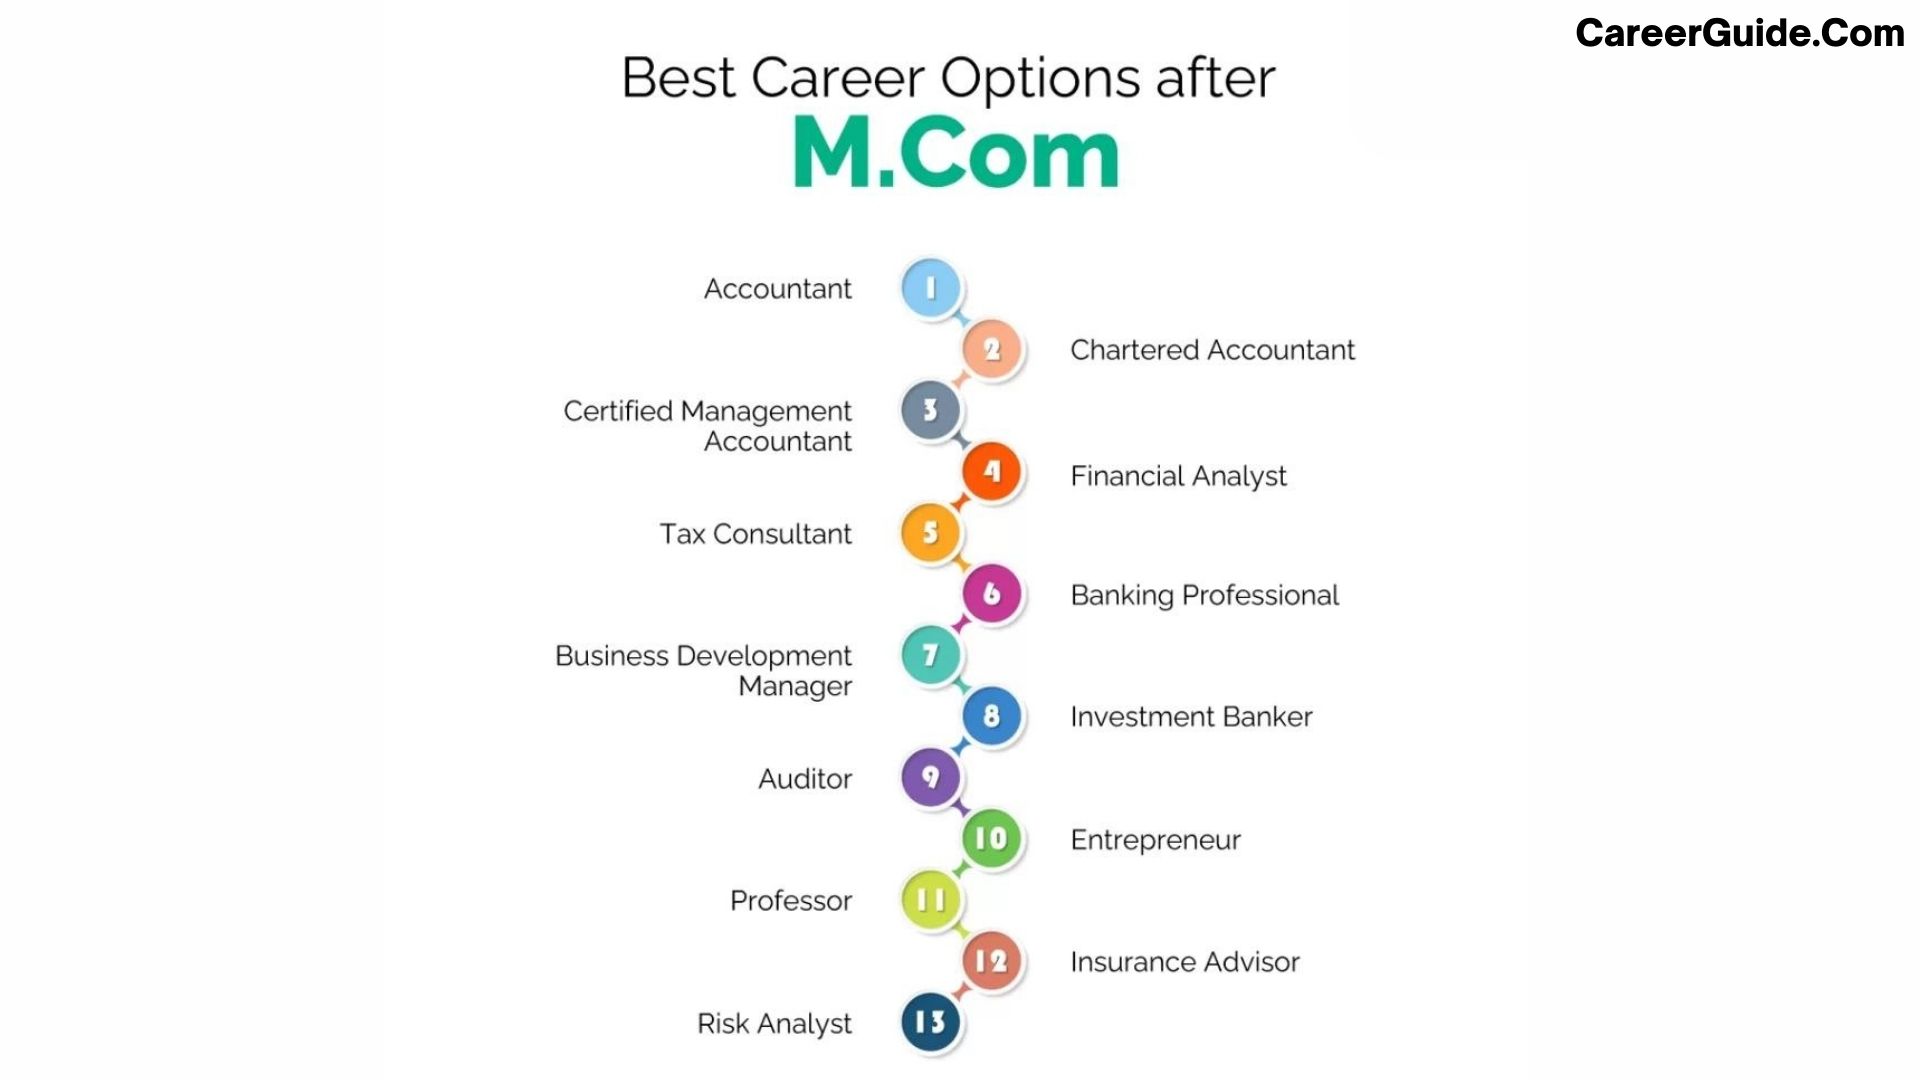 Jobs after m.com